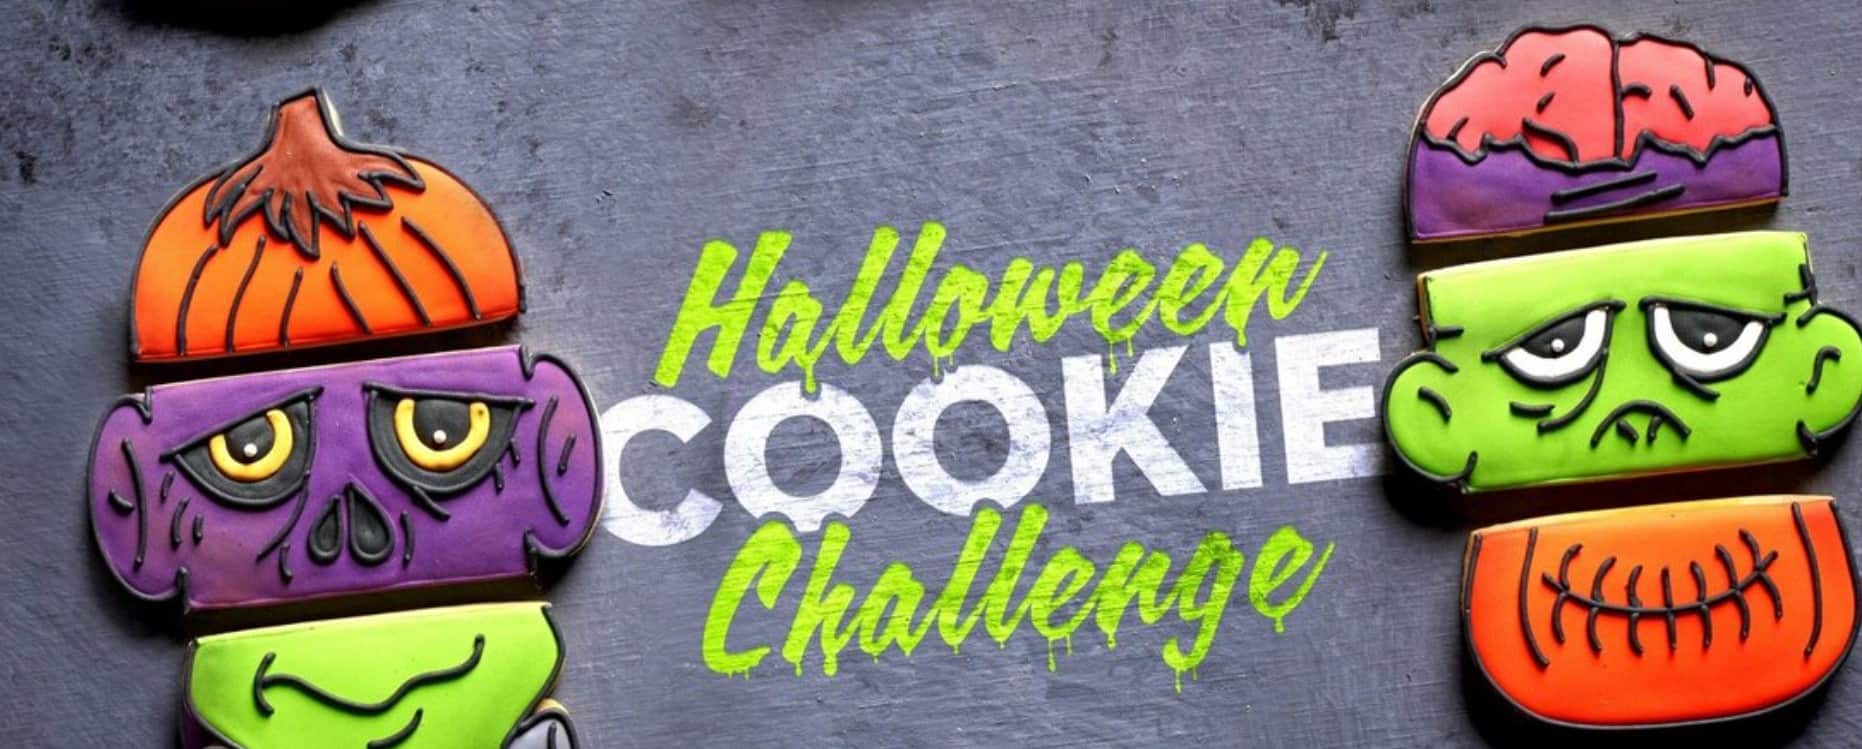 halloween cookie challenge